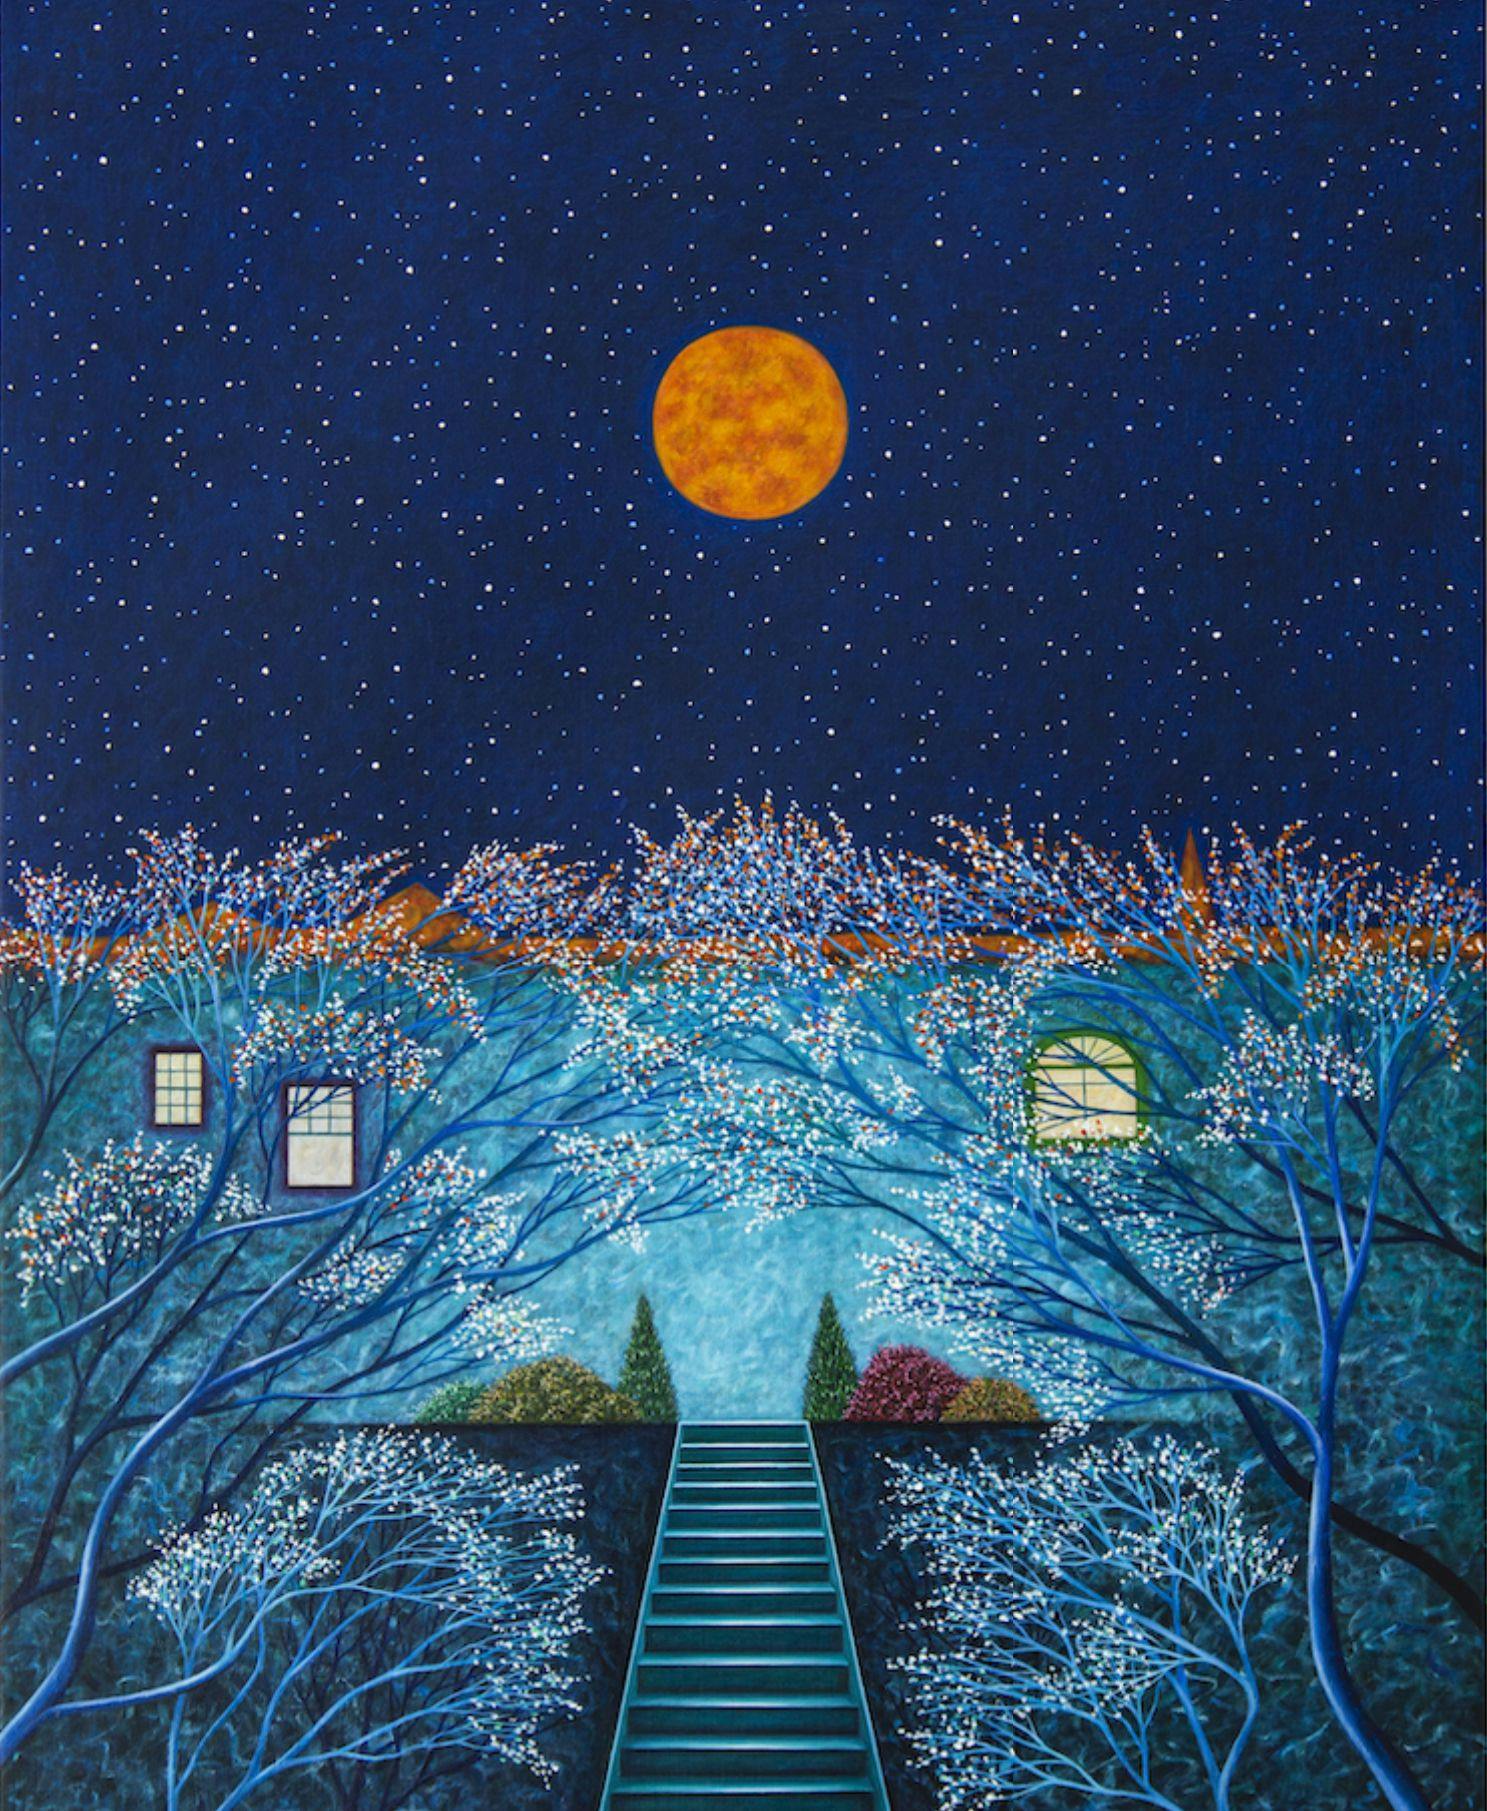 An artwork by Scott Kahn, titled For Matthew, Spring Moon, dated 2020